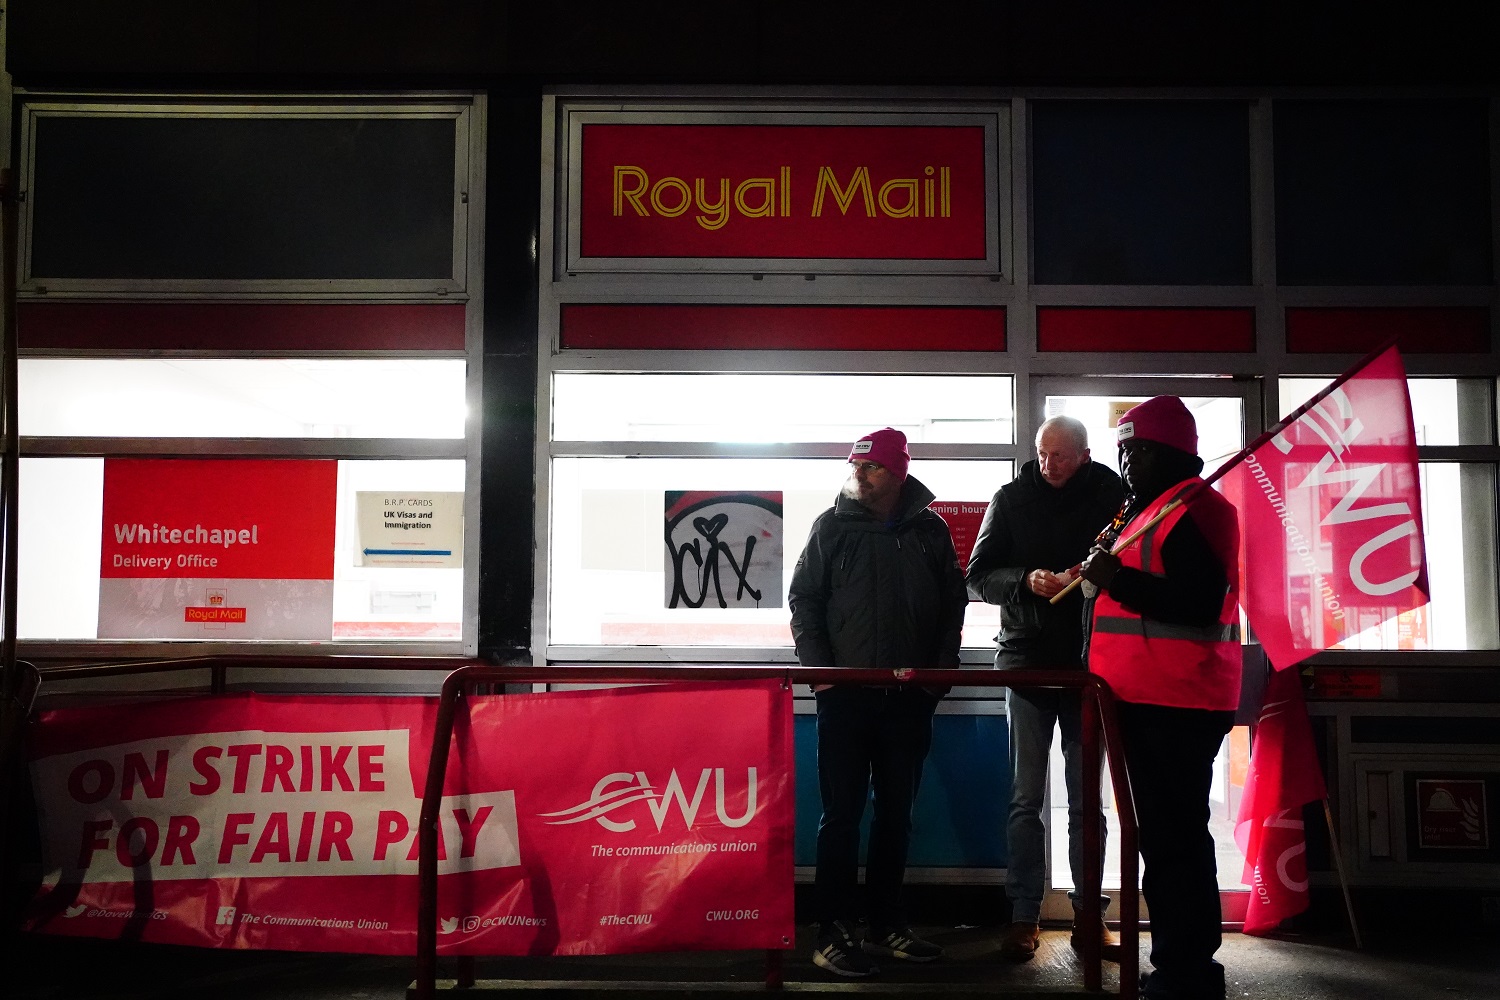 עובדי הדואר הבריטי שובתים בפתח סניף דואר בווייטצ'אפל, במחאה על שחיקת השכר ותנאי העבודה (צילום: PA via Reuters)